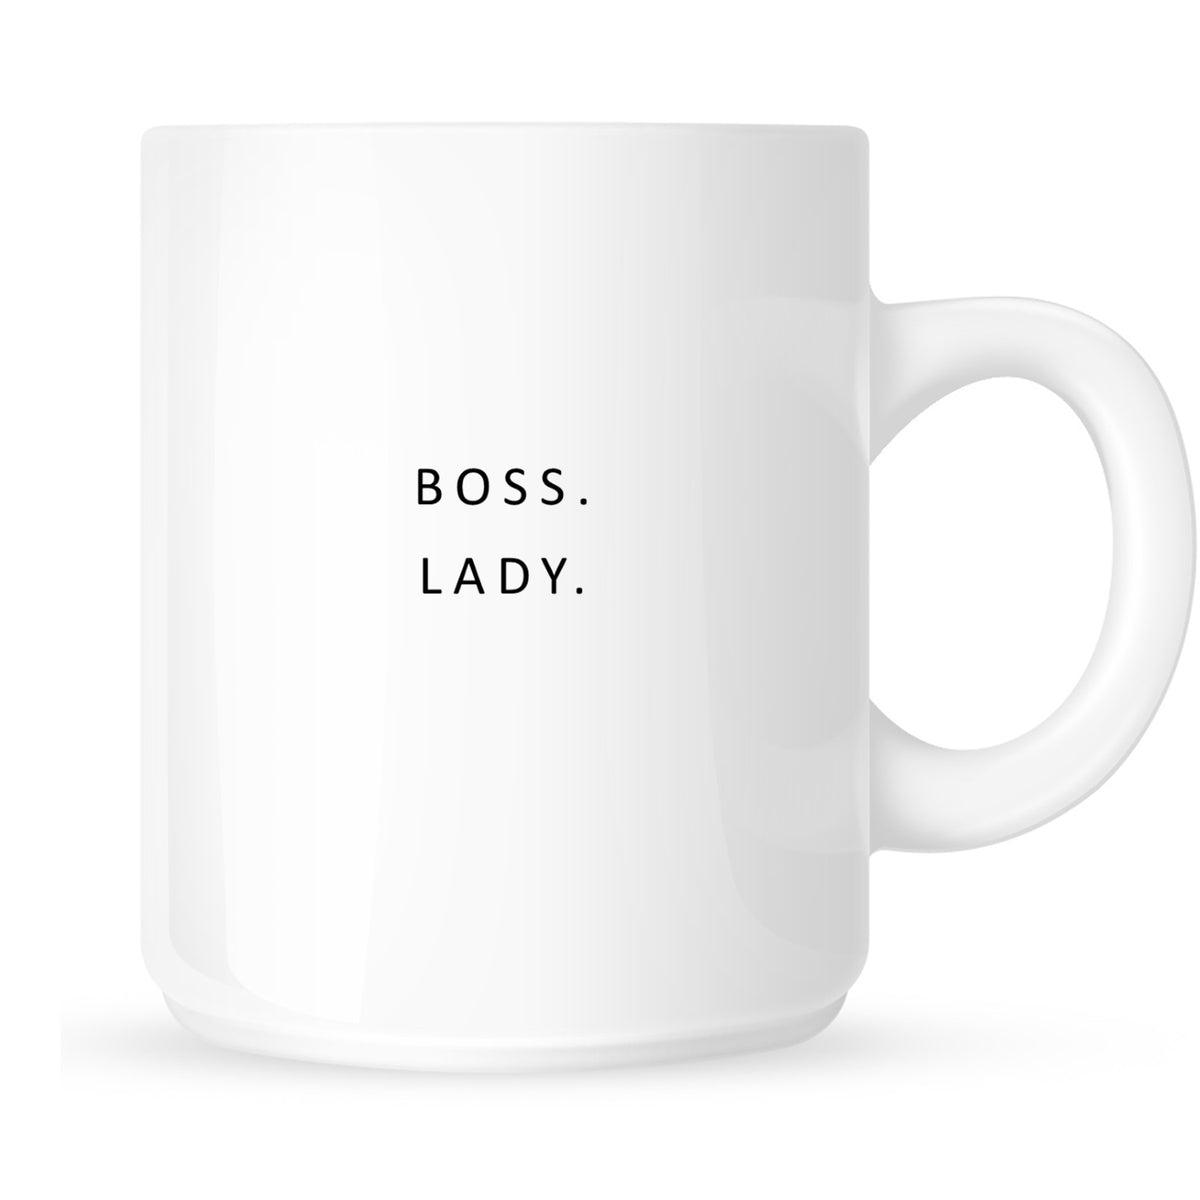 Mug - Boss. Lady.